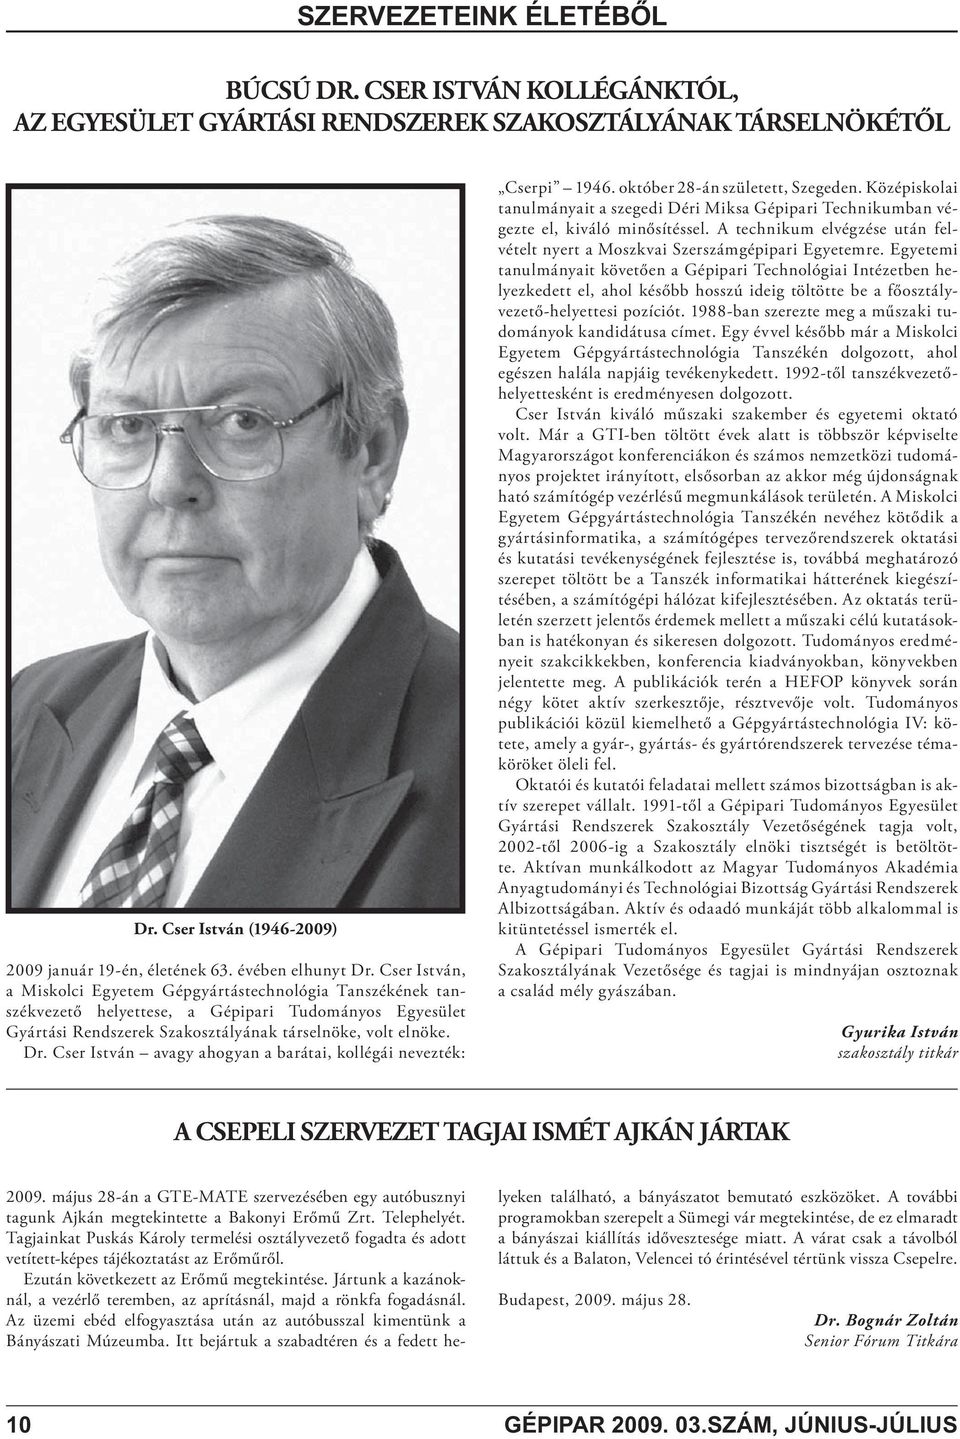 Cser István avagy ahogyan a barátai, kollégái nevezték: Cserpi 1946. október 28-án született, Szegeden.